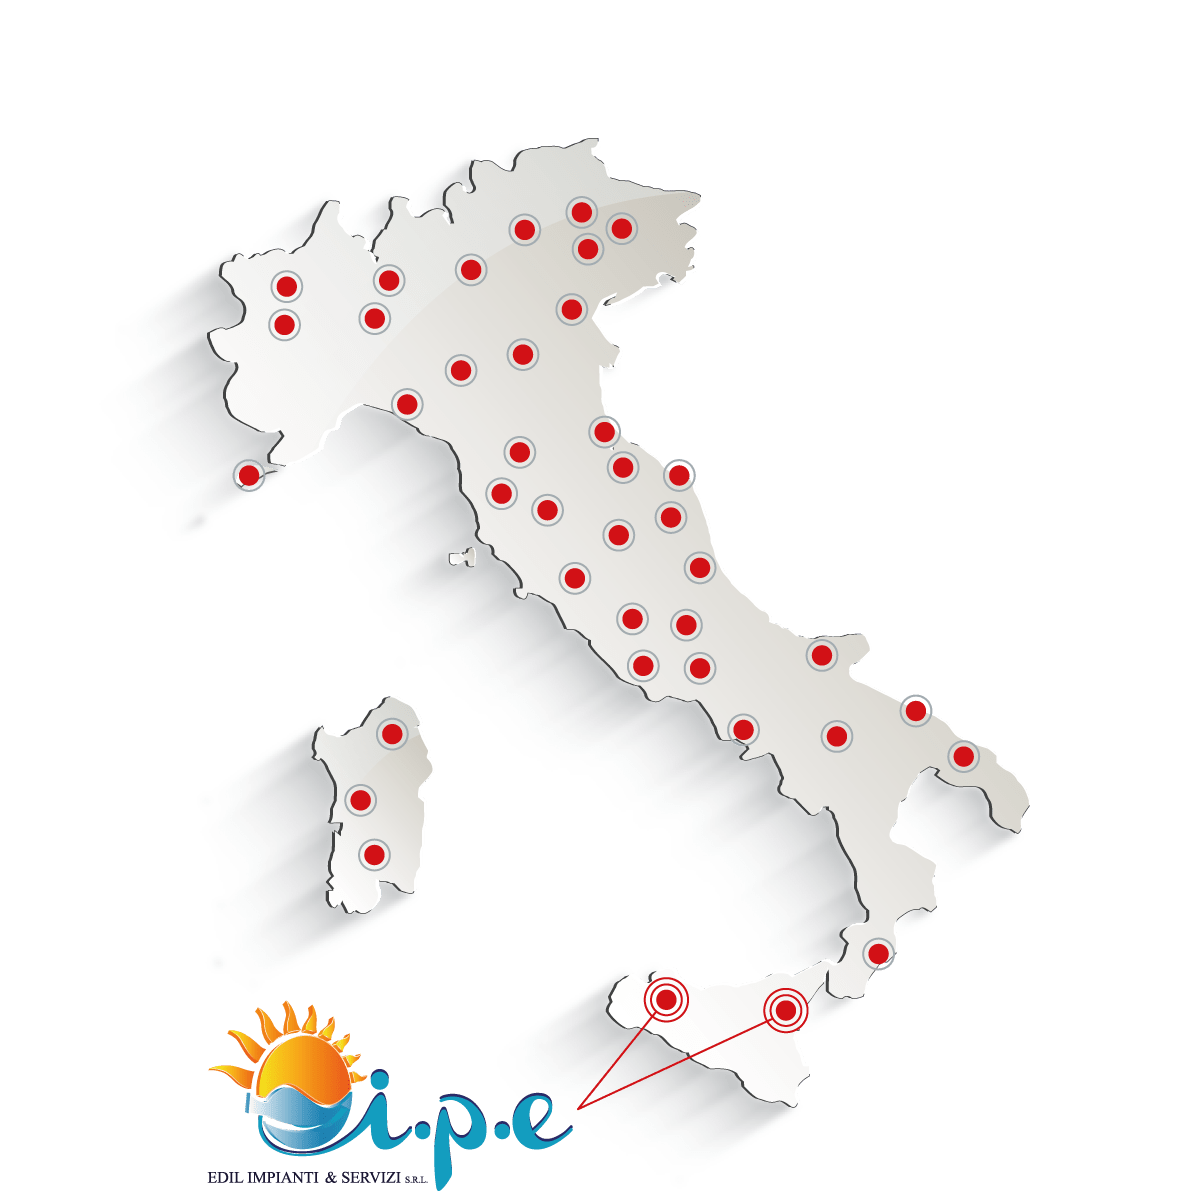 Edil Impianti e Servizi - Bagni Mobili & WC Chimici in Sicilia (Palermo e Catania)